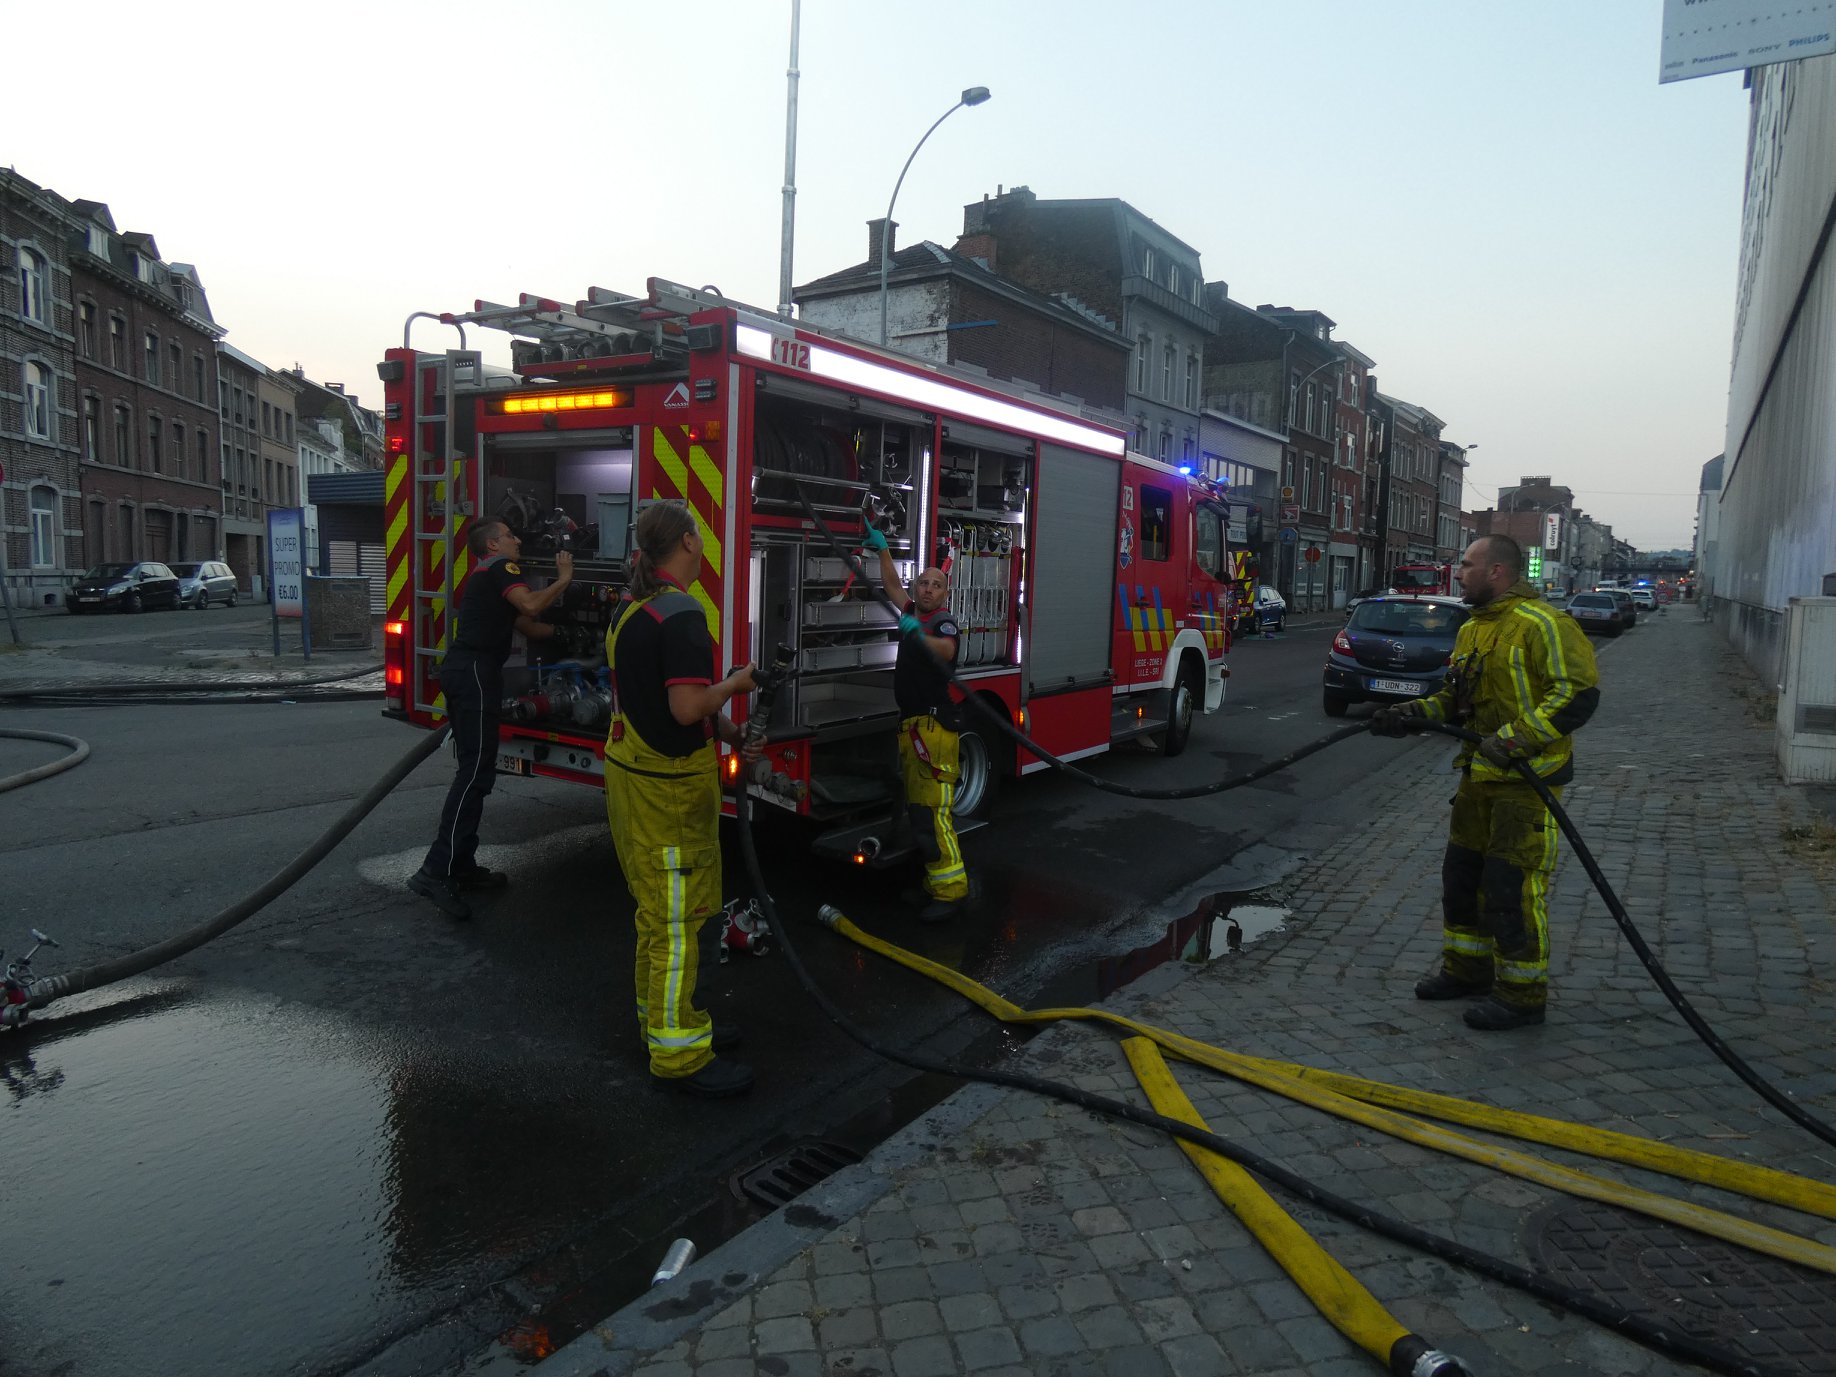 Un résident perd la vie dans l'incendie d'une maison de repos à Liège (12-08-2020 + photos) 11759810